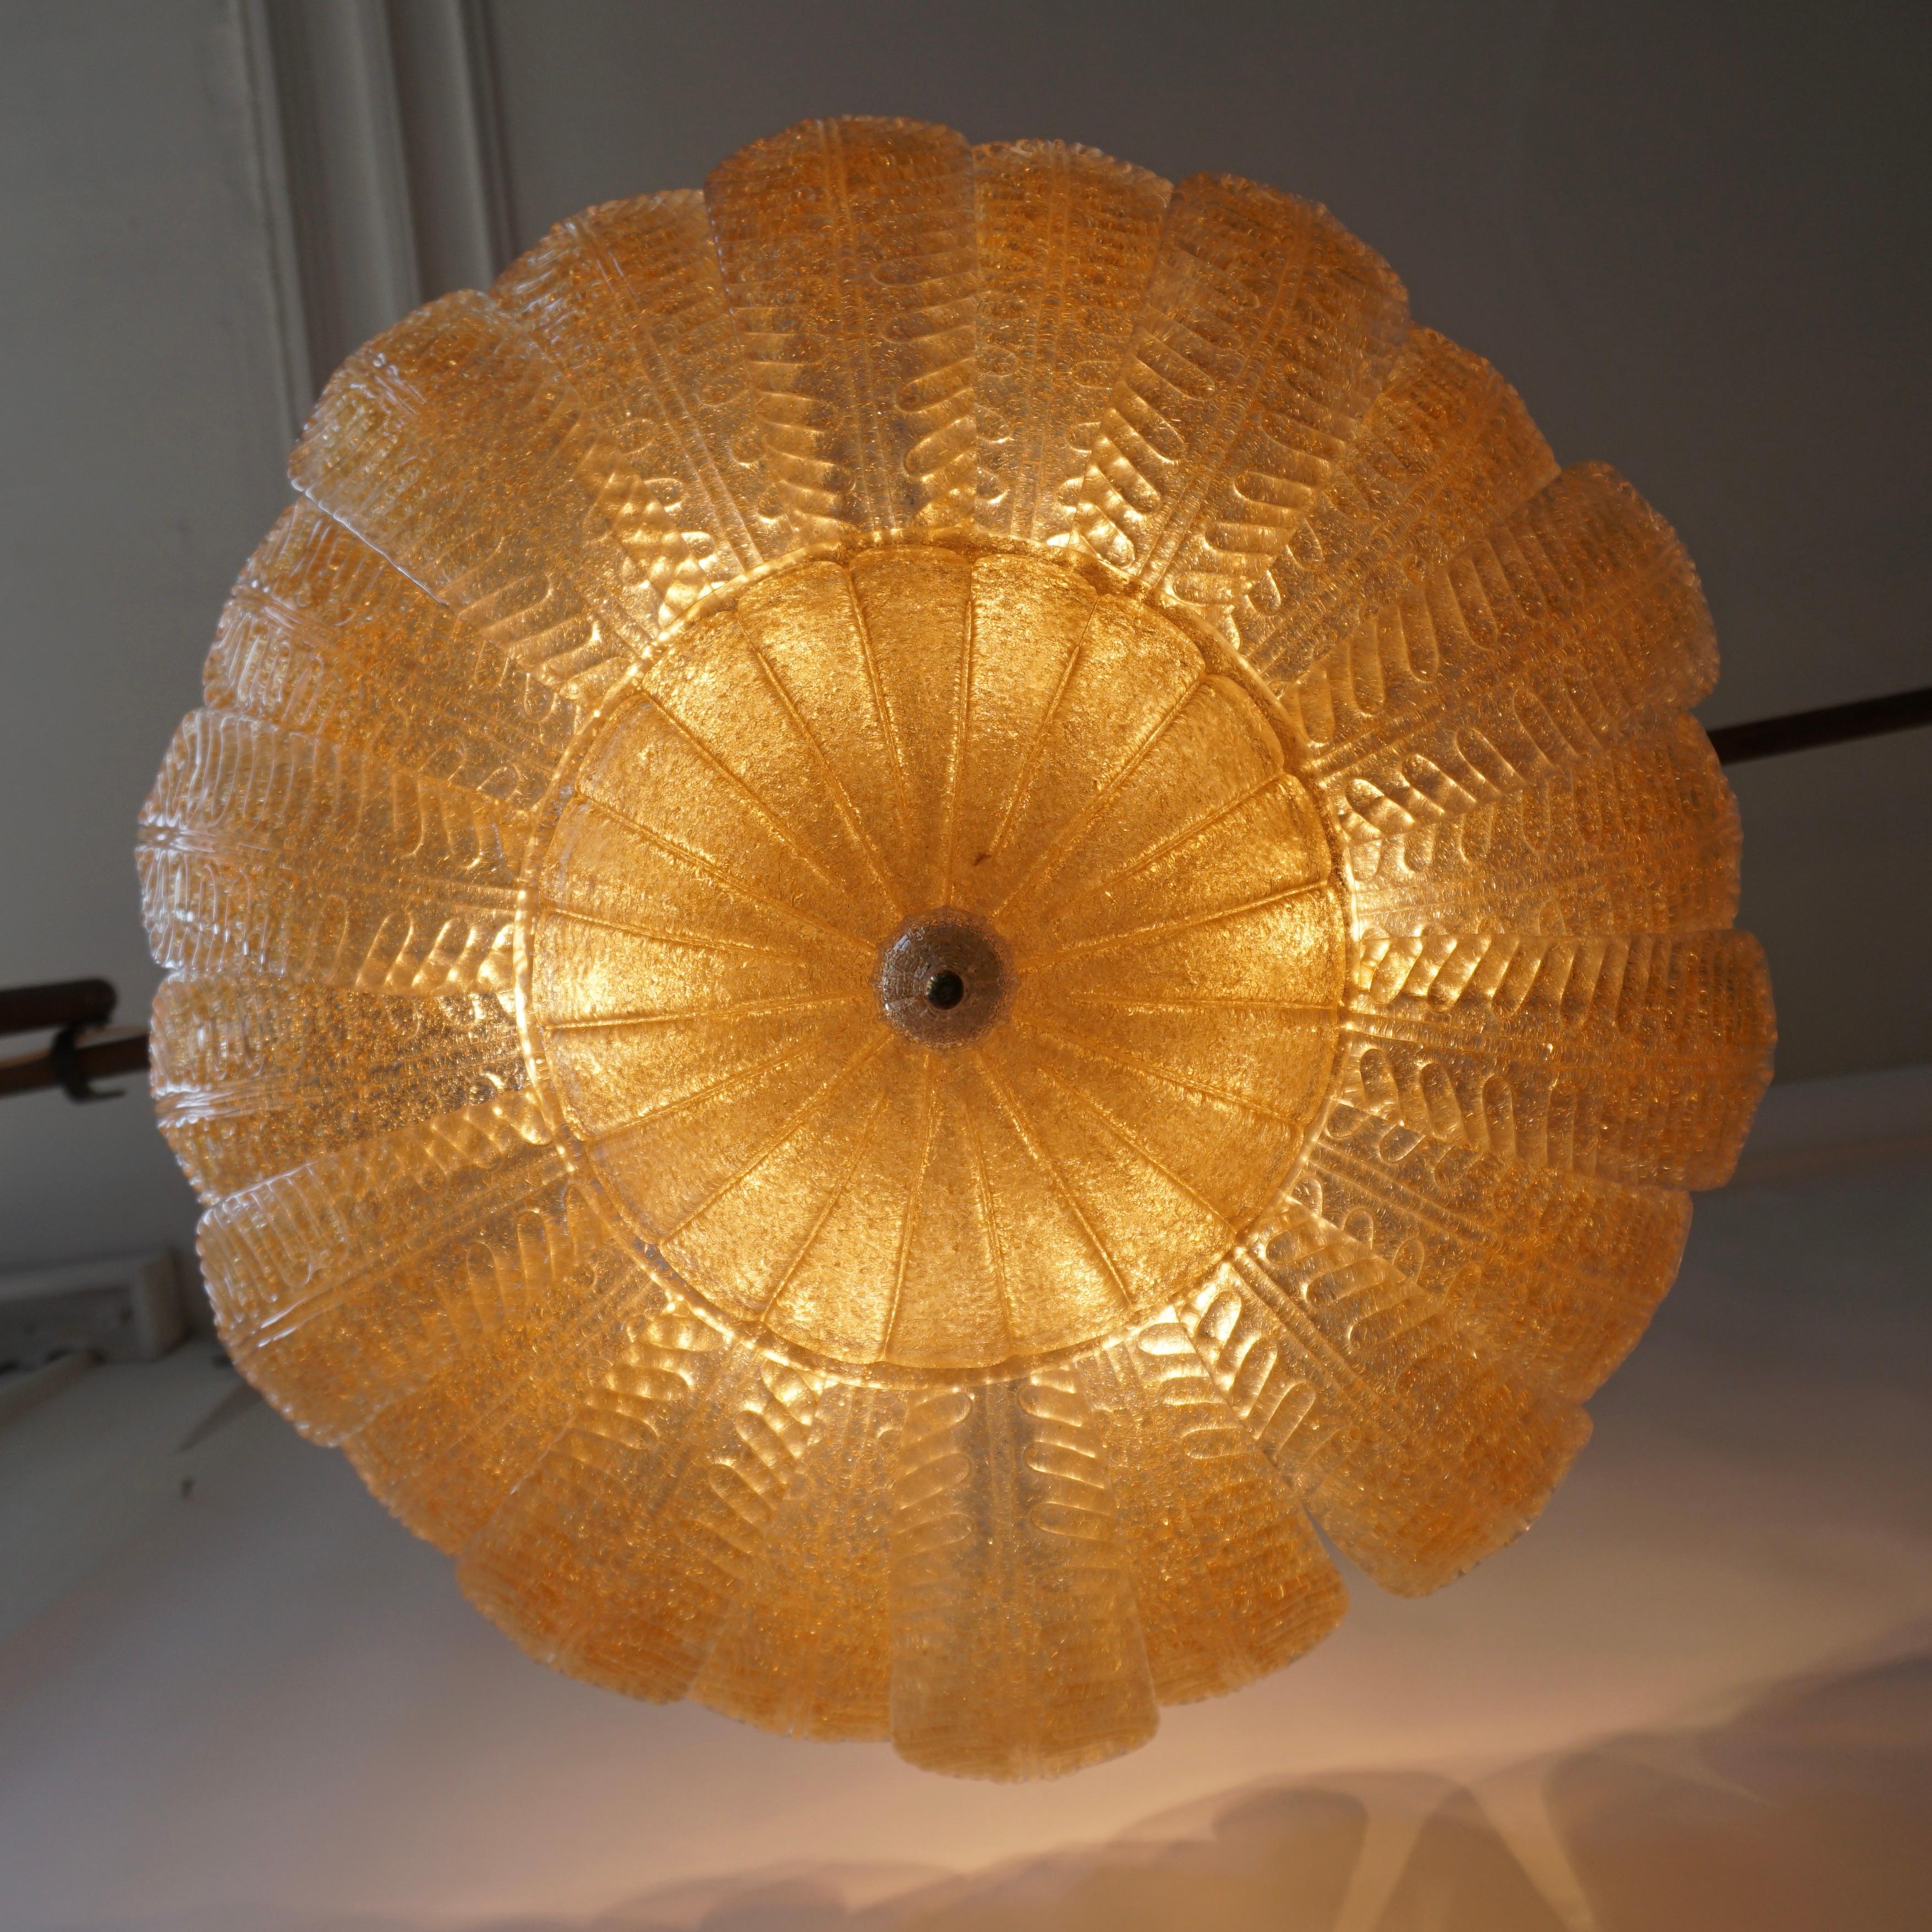 Barovier Toso Style Italian Gold Textured Murano Glass Flower Leaf Flushmount (en anglais)

Élégants lustres vénitiens, entièrement réalisés à la main en Murano, de style Mid-Century Modern, avec une corolle de fleur organique, des feuilles